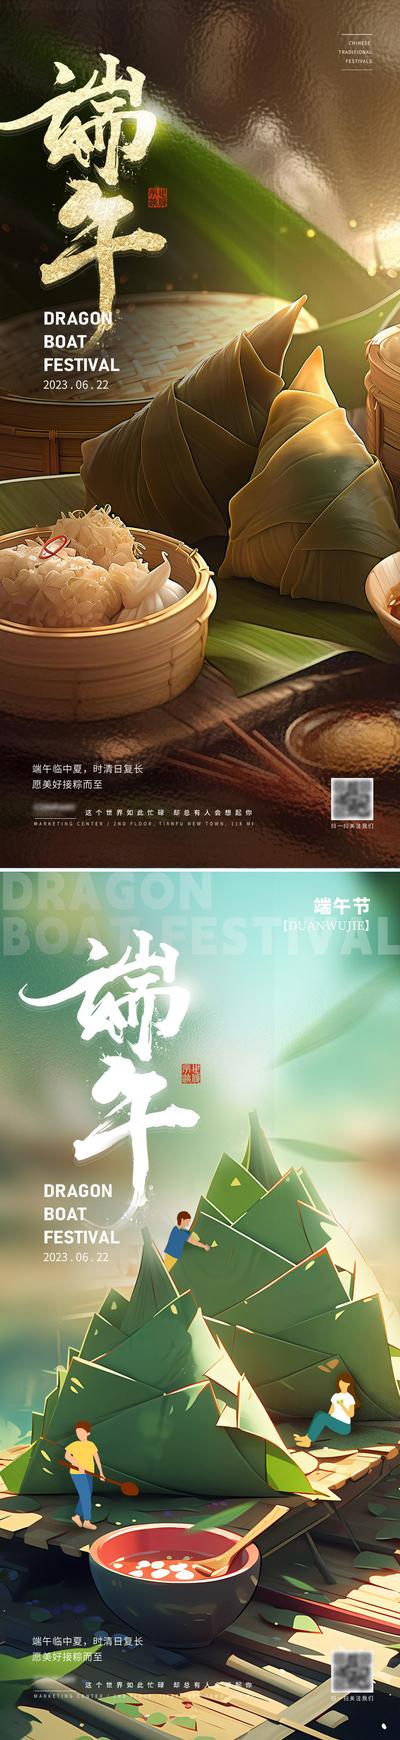 南门网 广告 海报 节日 端午 美食 中国传统节日 粽子